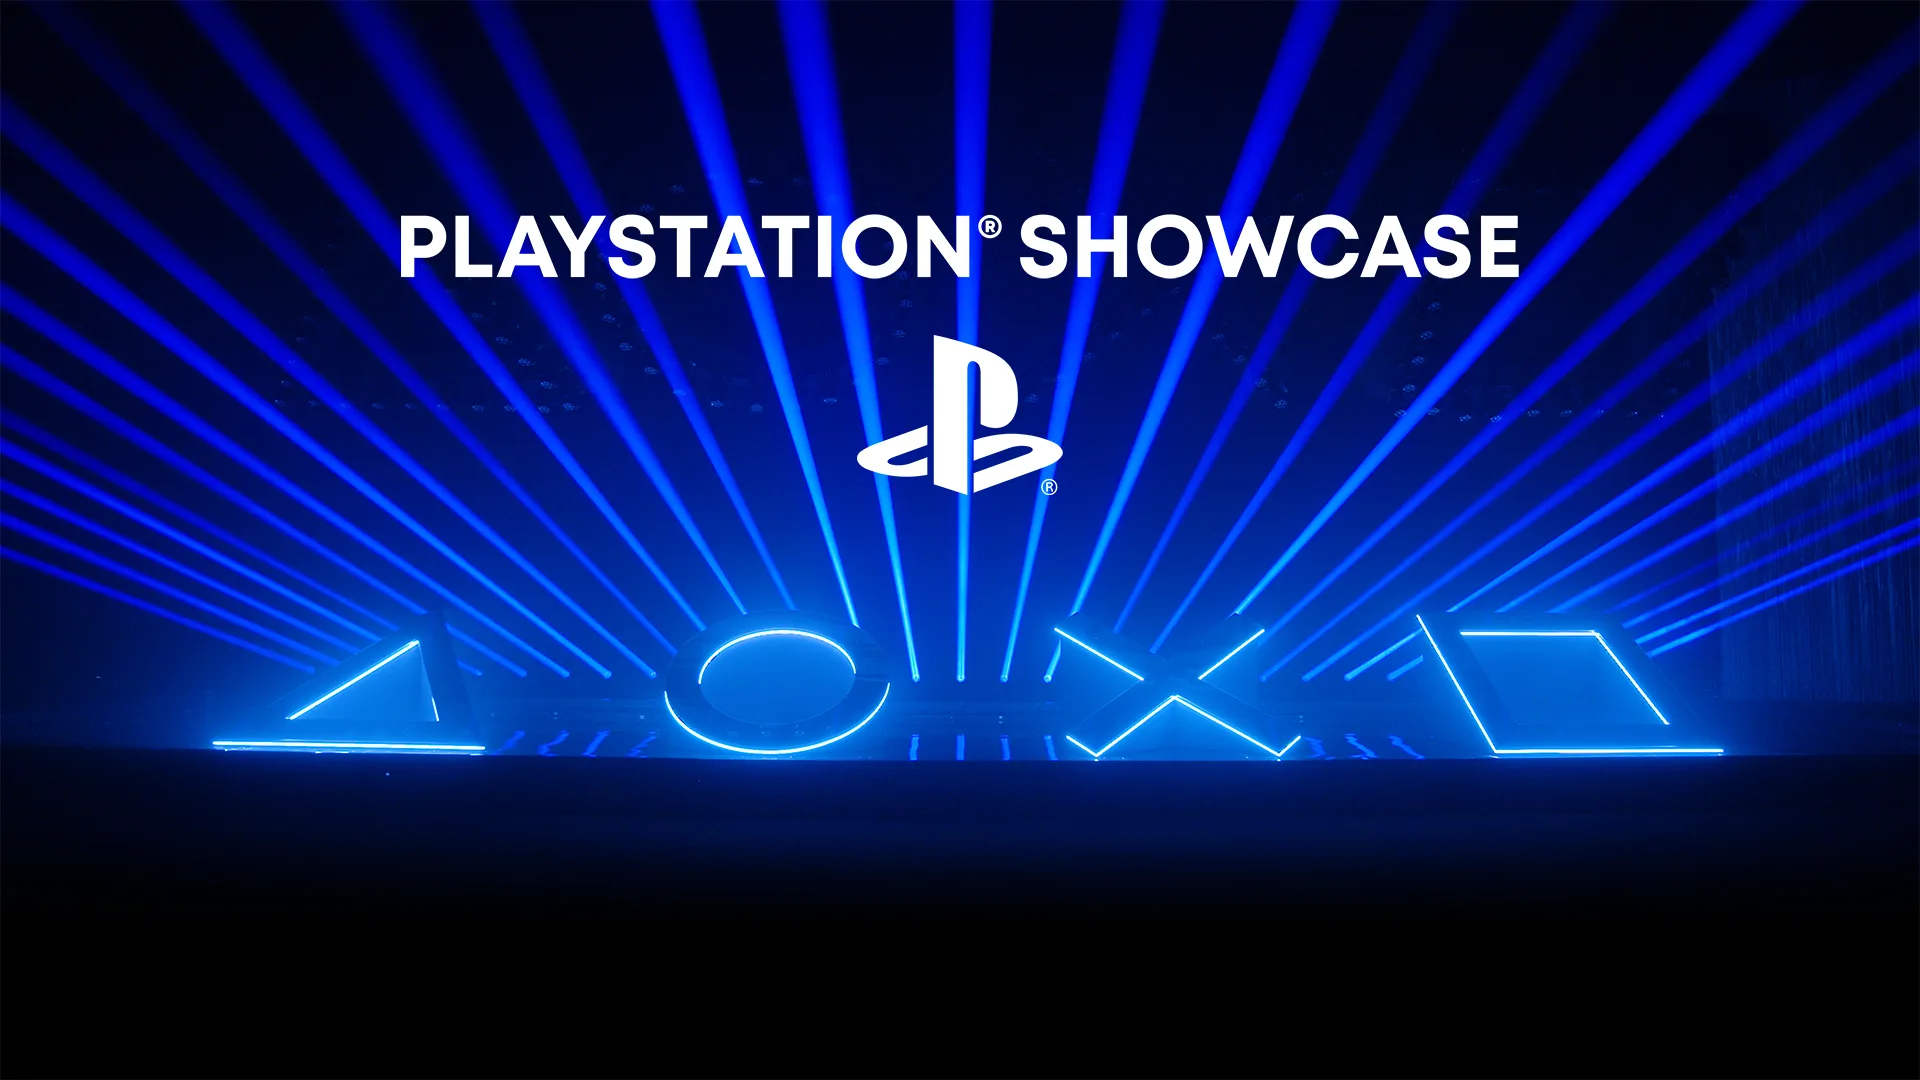 PlayStation Showcase : un gros événement très bientôt ? Ça a leaké !